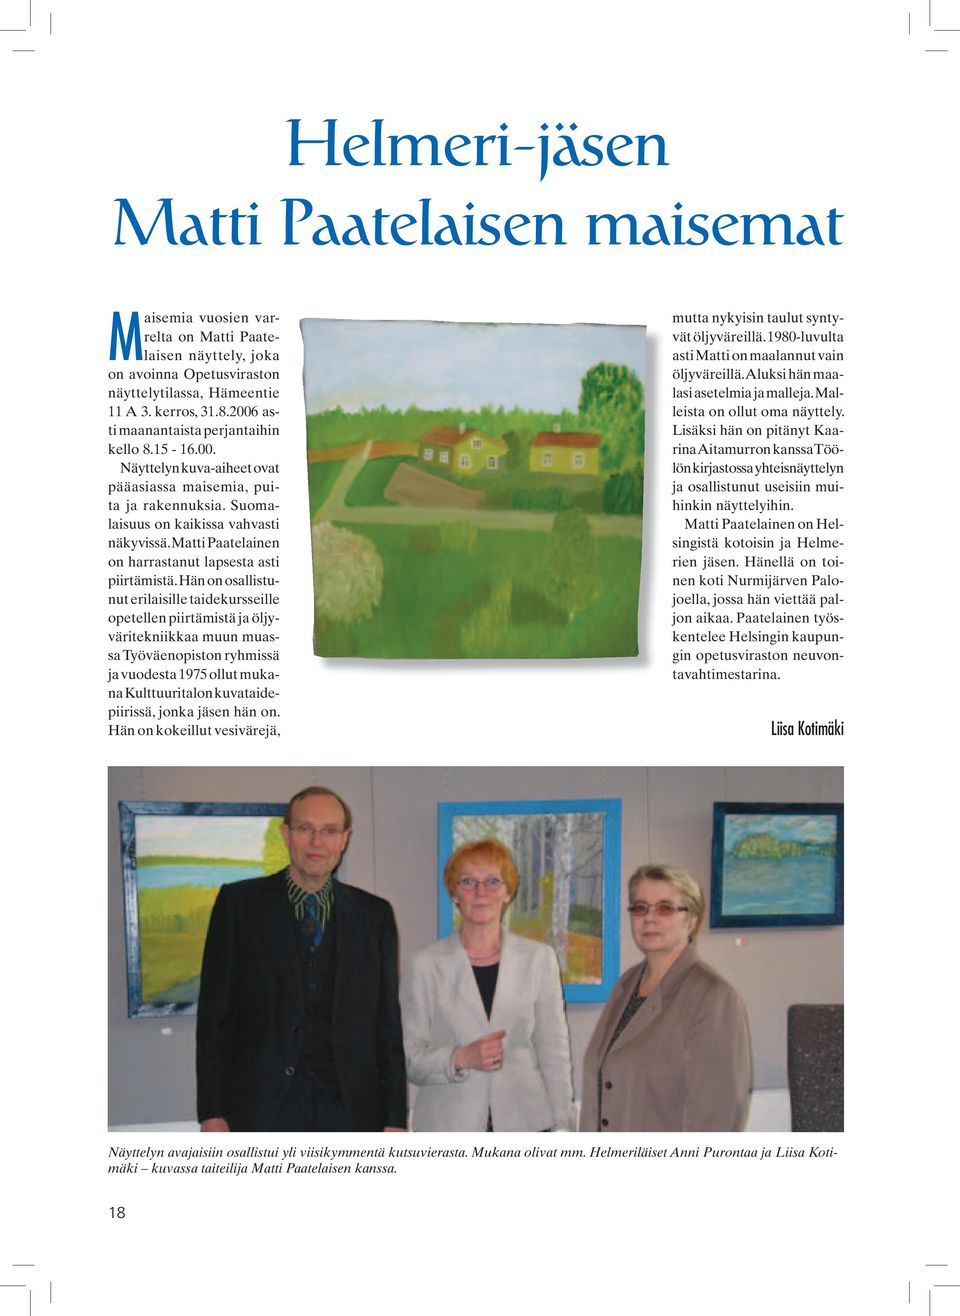 Matti Paatelainen on harrastanut lapsesta asti piirtämistä.